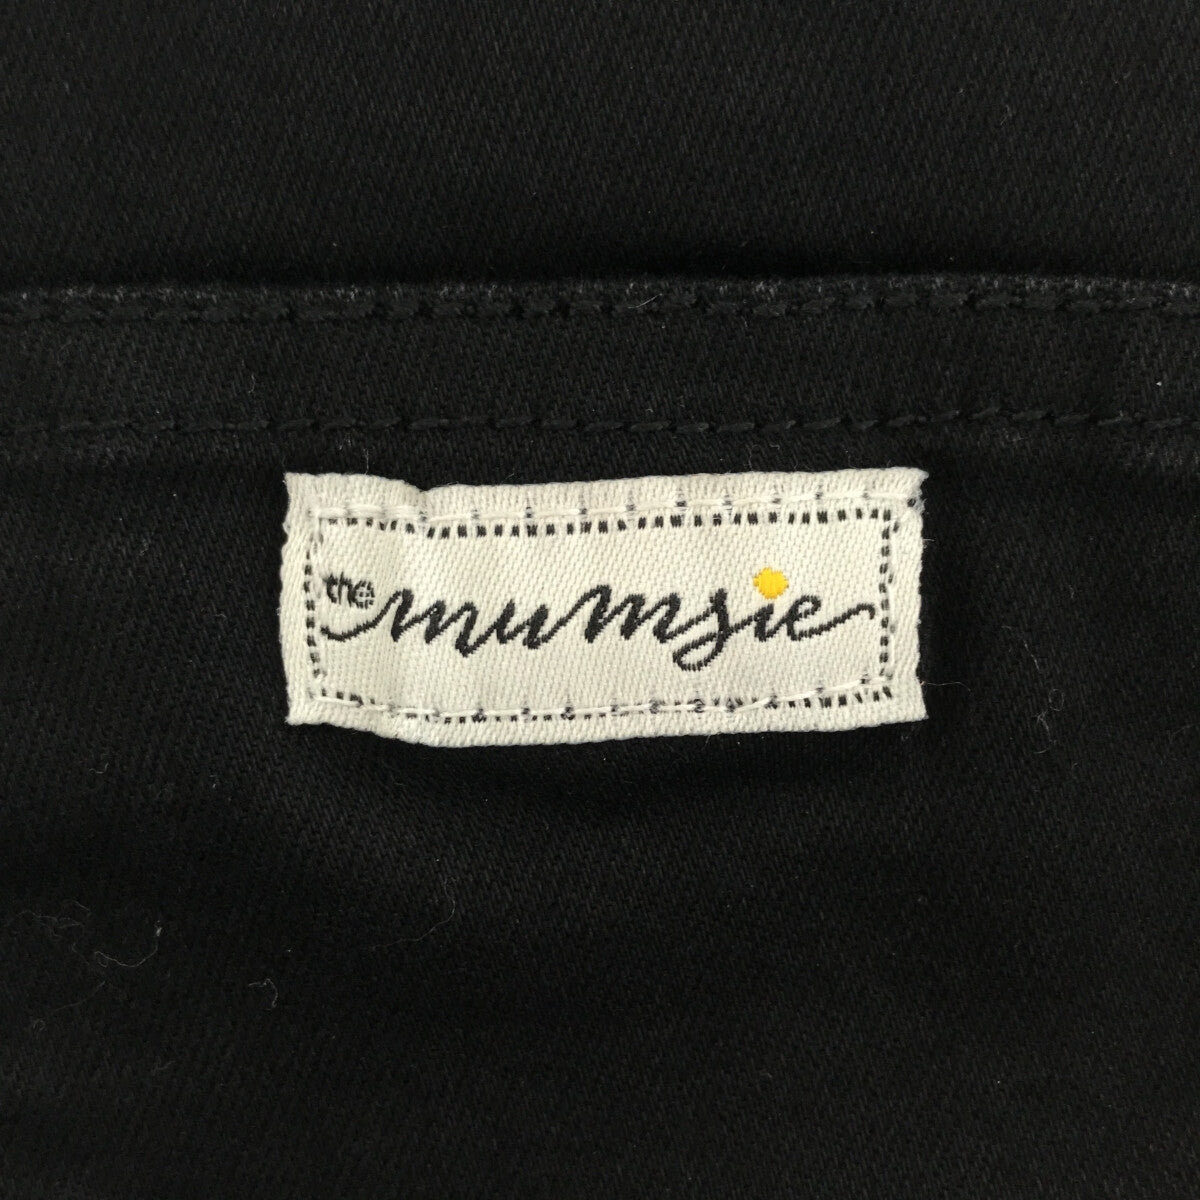 THE MUMSIE / マムジー | コットン サロペット / オーバーオール / 着る抱っこ紐 | XXS | ブラック | レディース